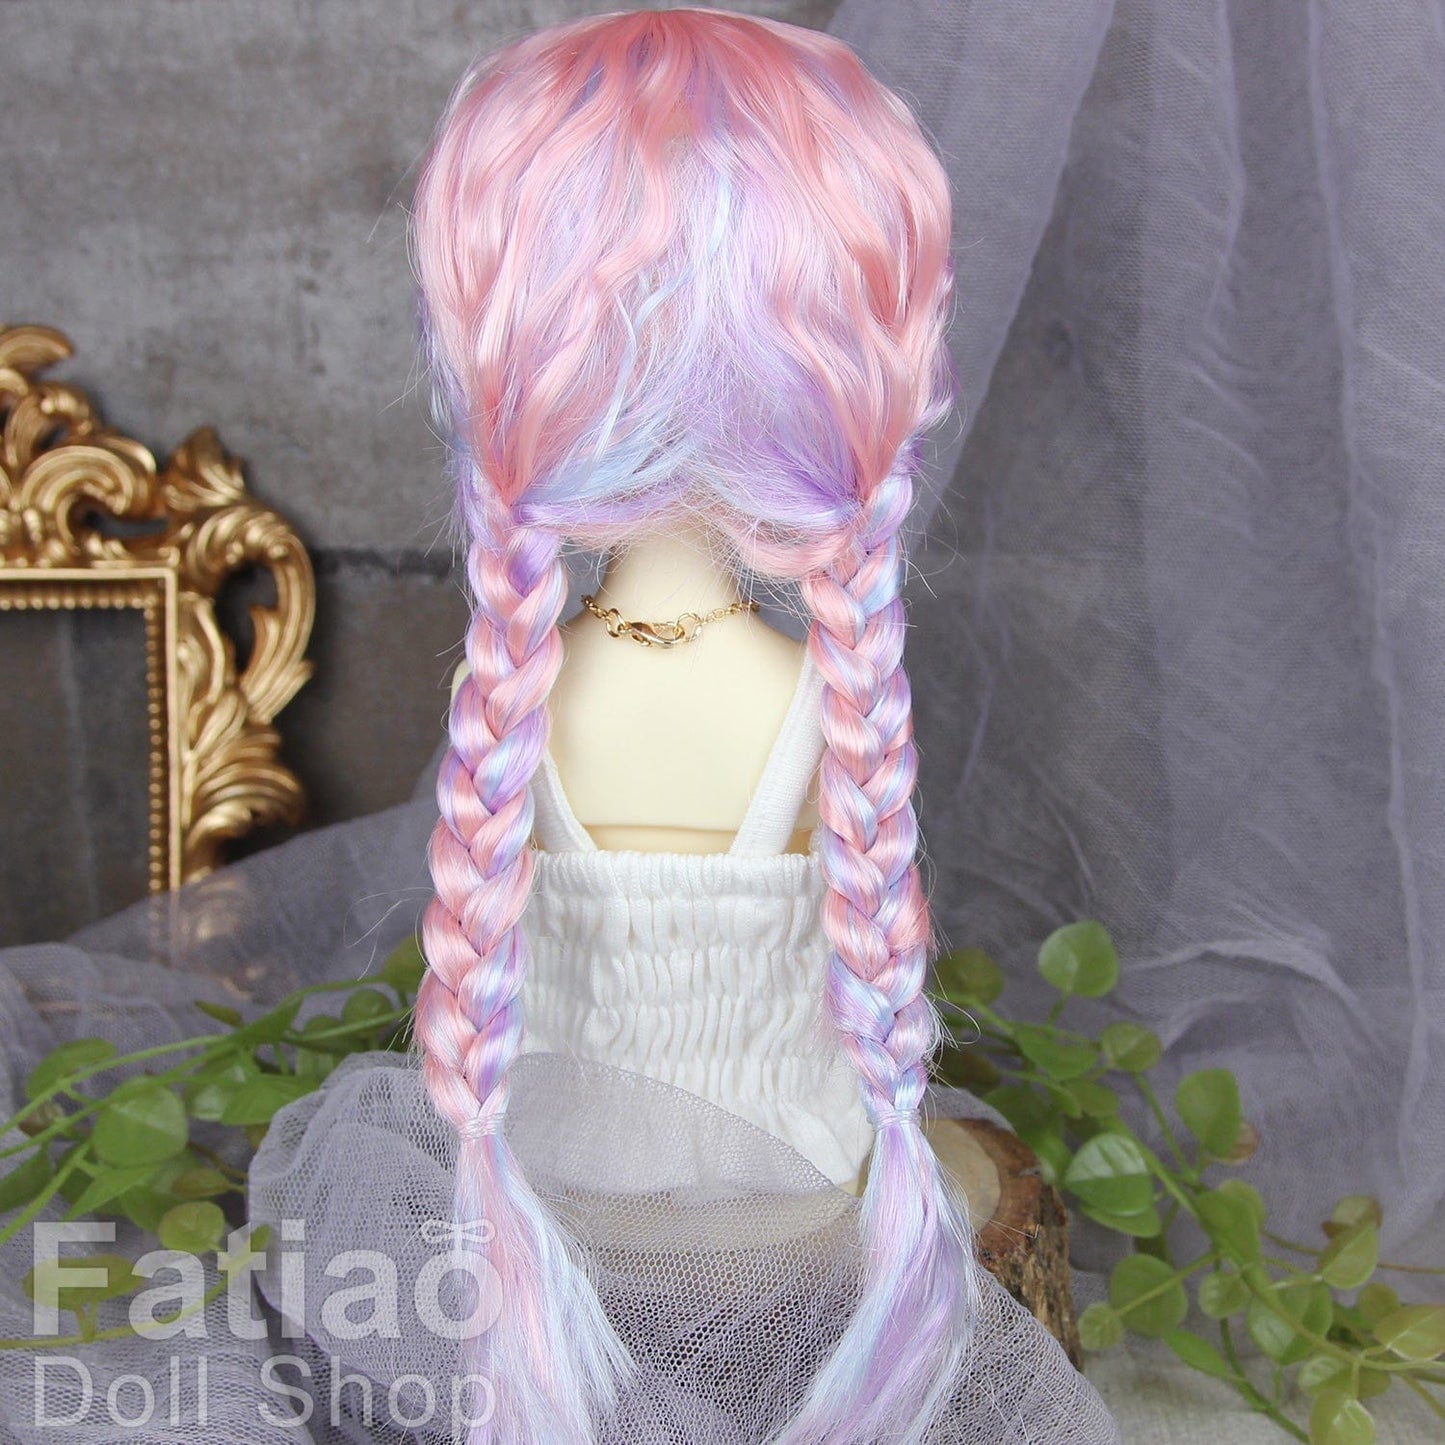 【Fatiao Doll Shop】FWF-691 娃用假髮 多色 / 7-8吋 BJD 4分